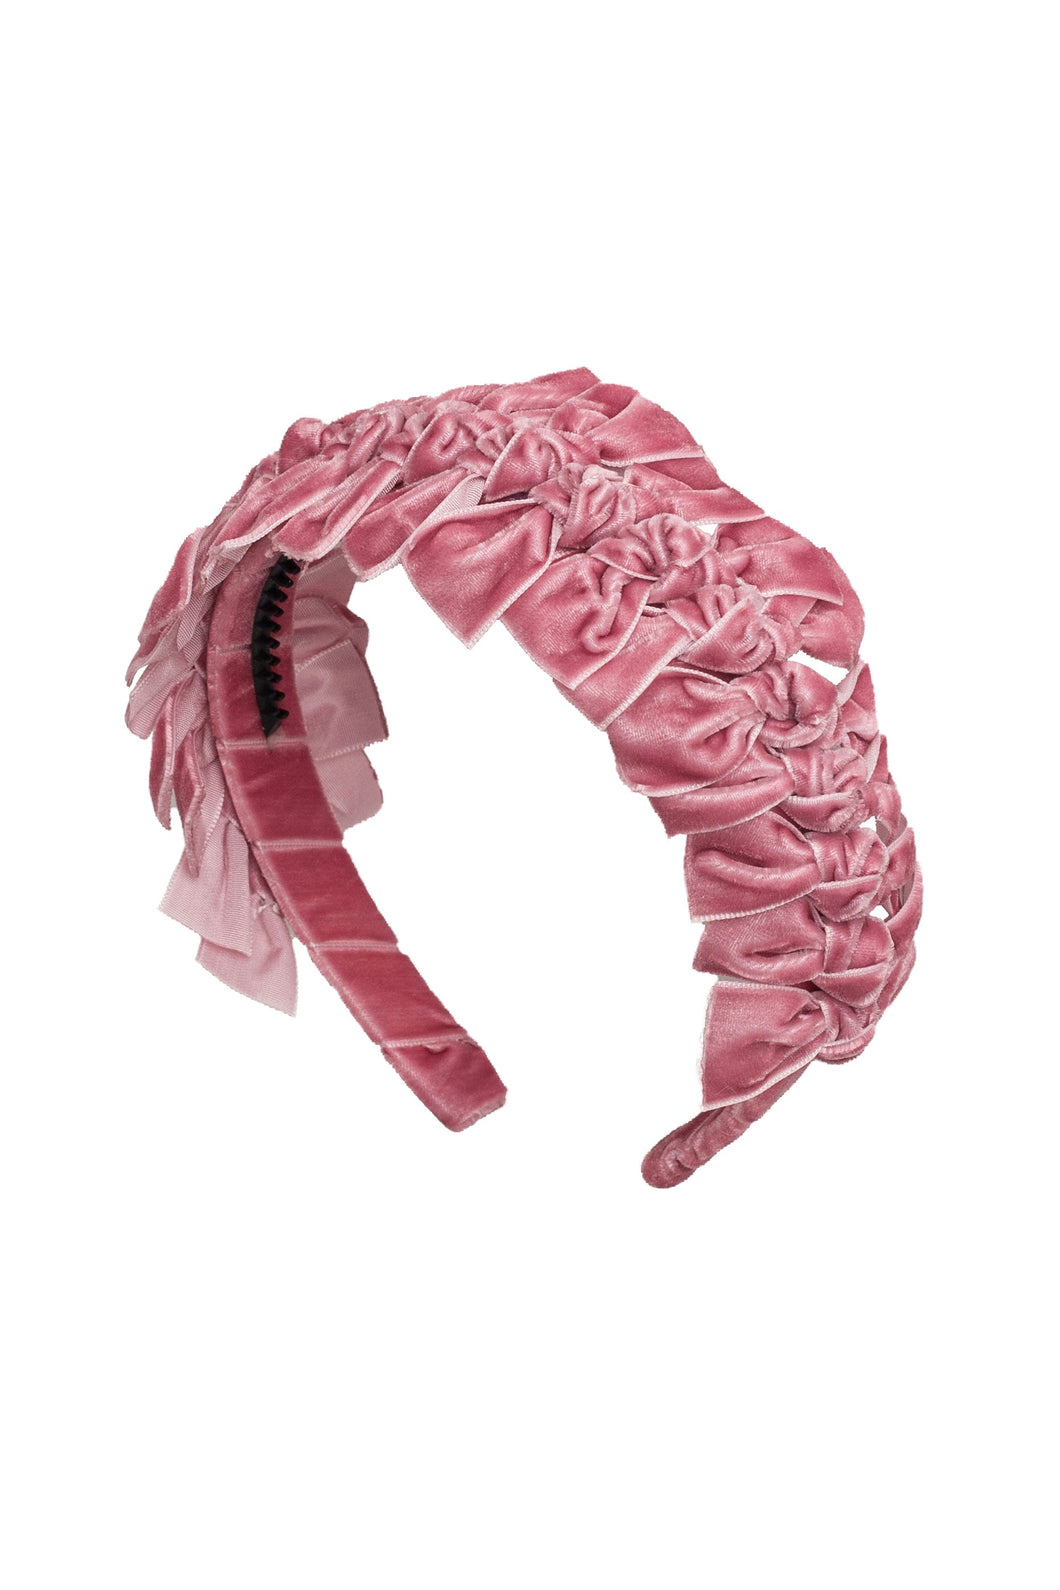 Velvet Ties Ribbon Headband - Rose